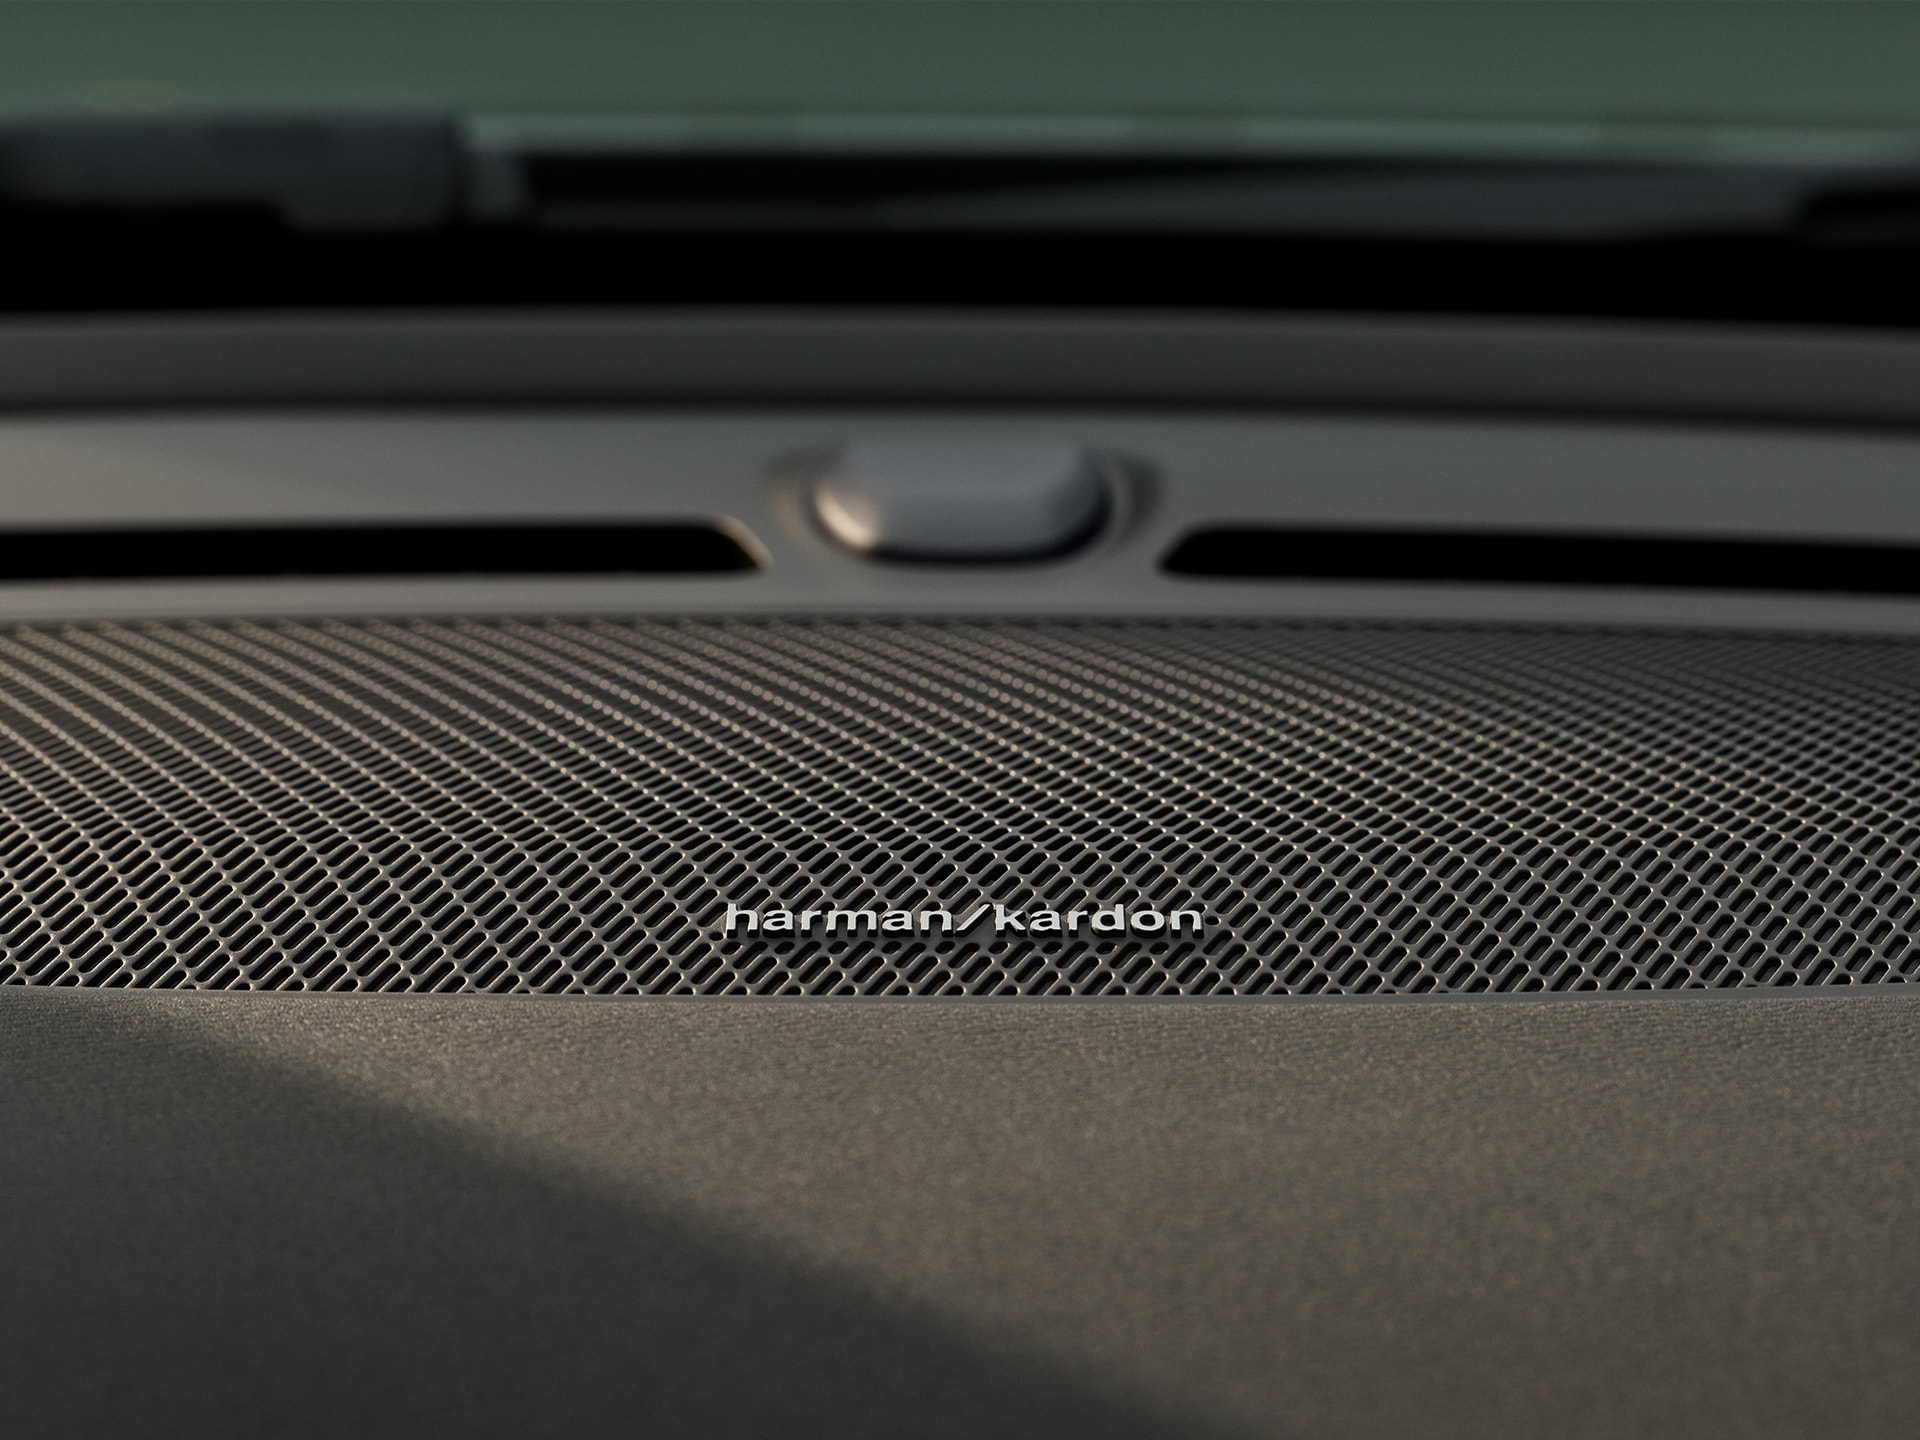 Detail van Harman Kardon luidspreker in een Volvo XC40.